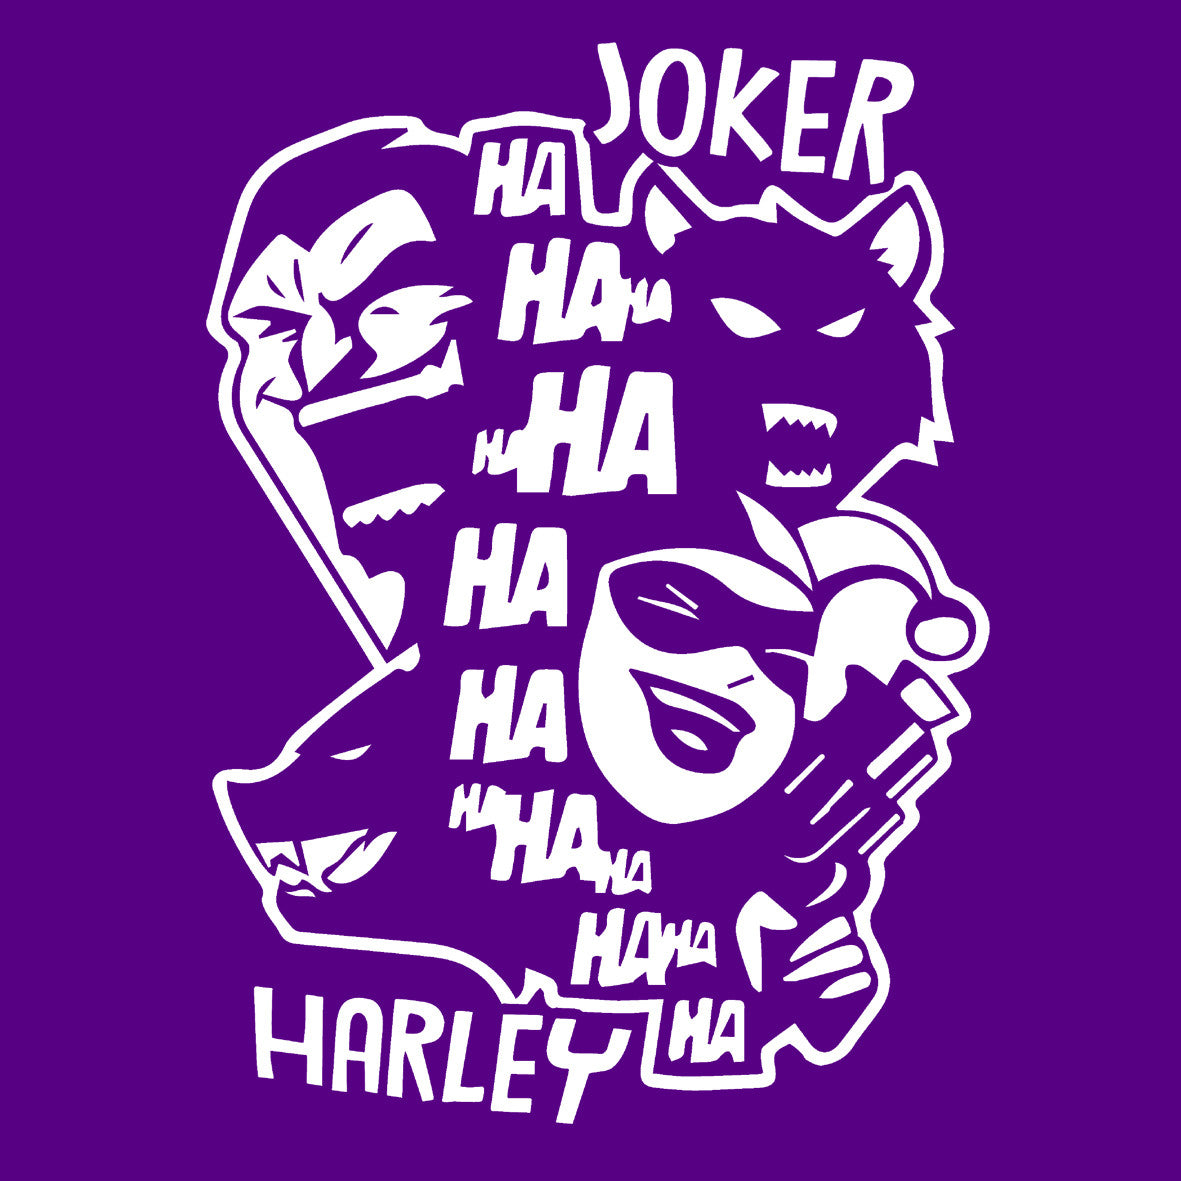 Harley Joker hahaha